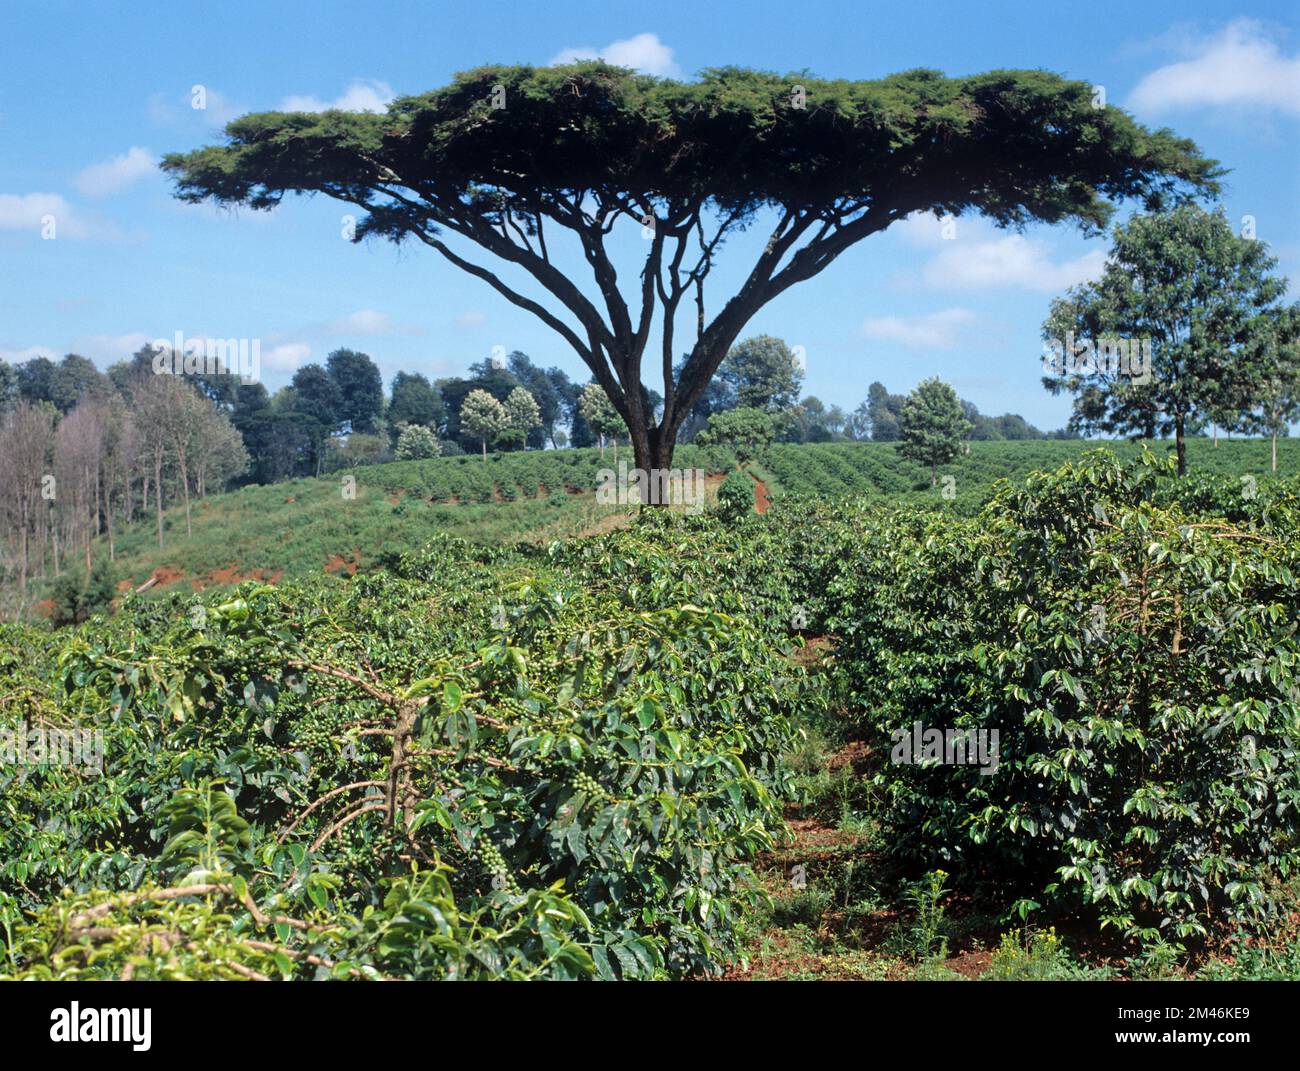 Plantage von arabica-Kaffee (Coffea arabica), reifen Büschen in grünen Beeren mit Akaziendorn in der Nähe von Nairobi, Kenia Stockfoto